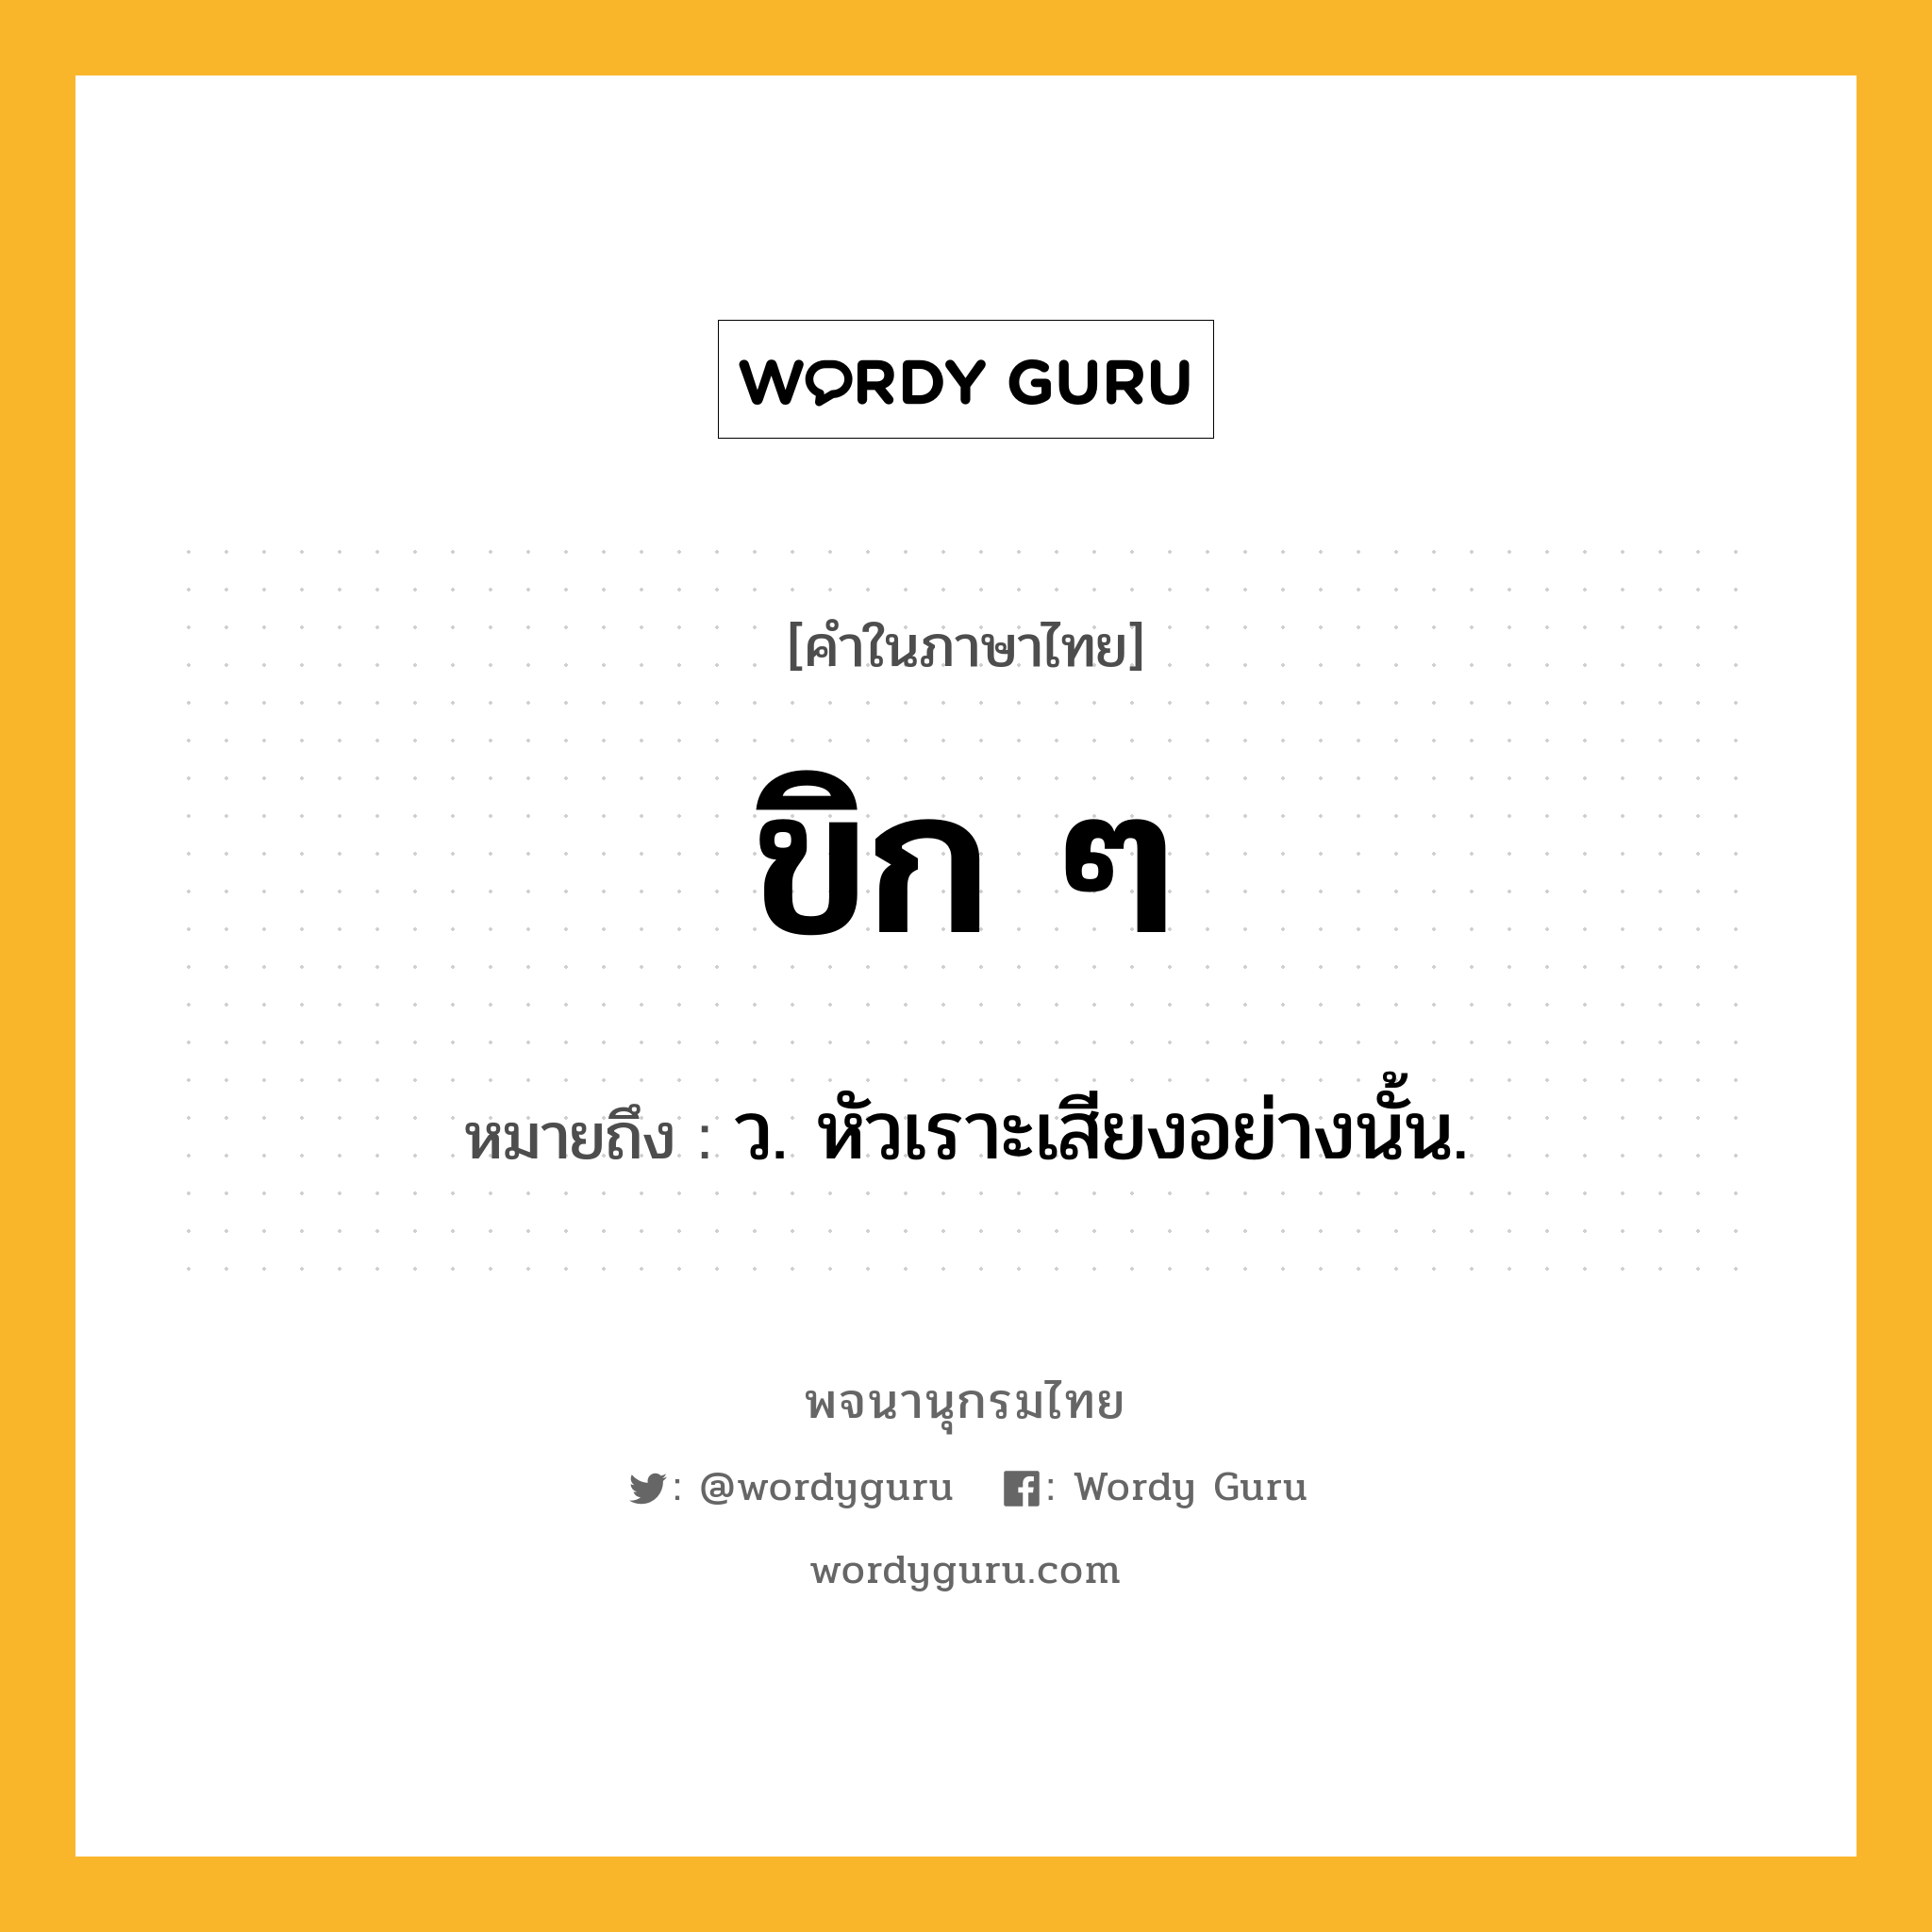 ขิก ๆ หมายถึงอะไร?, คำในภาษาไทย ขิก ๆ หมายถึง ว. หัวเราะเสียงอย่างนั้น.